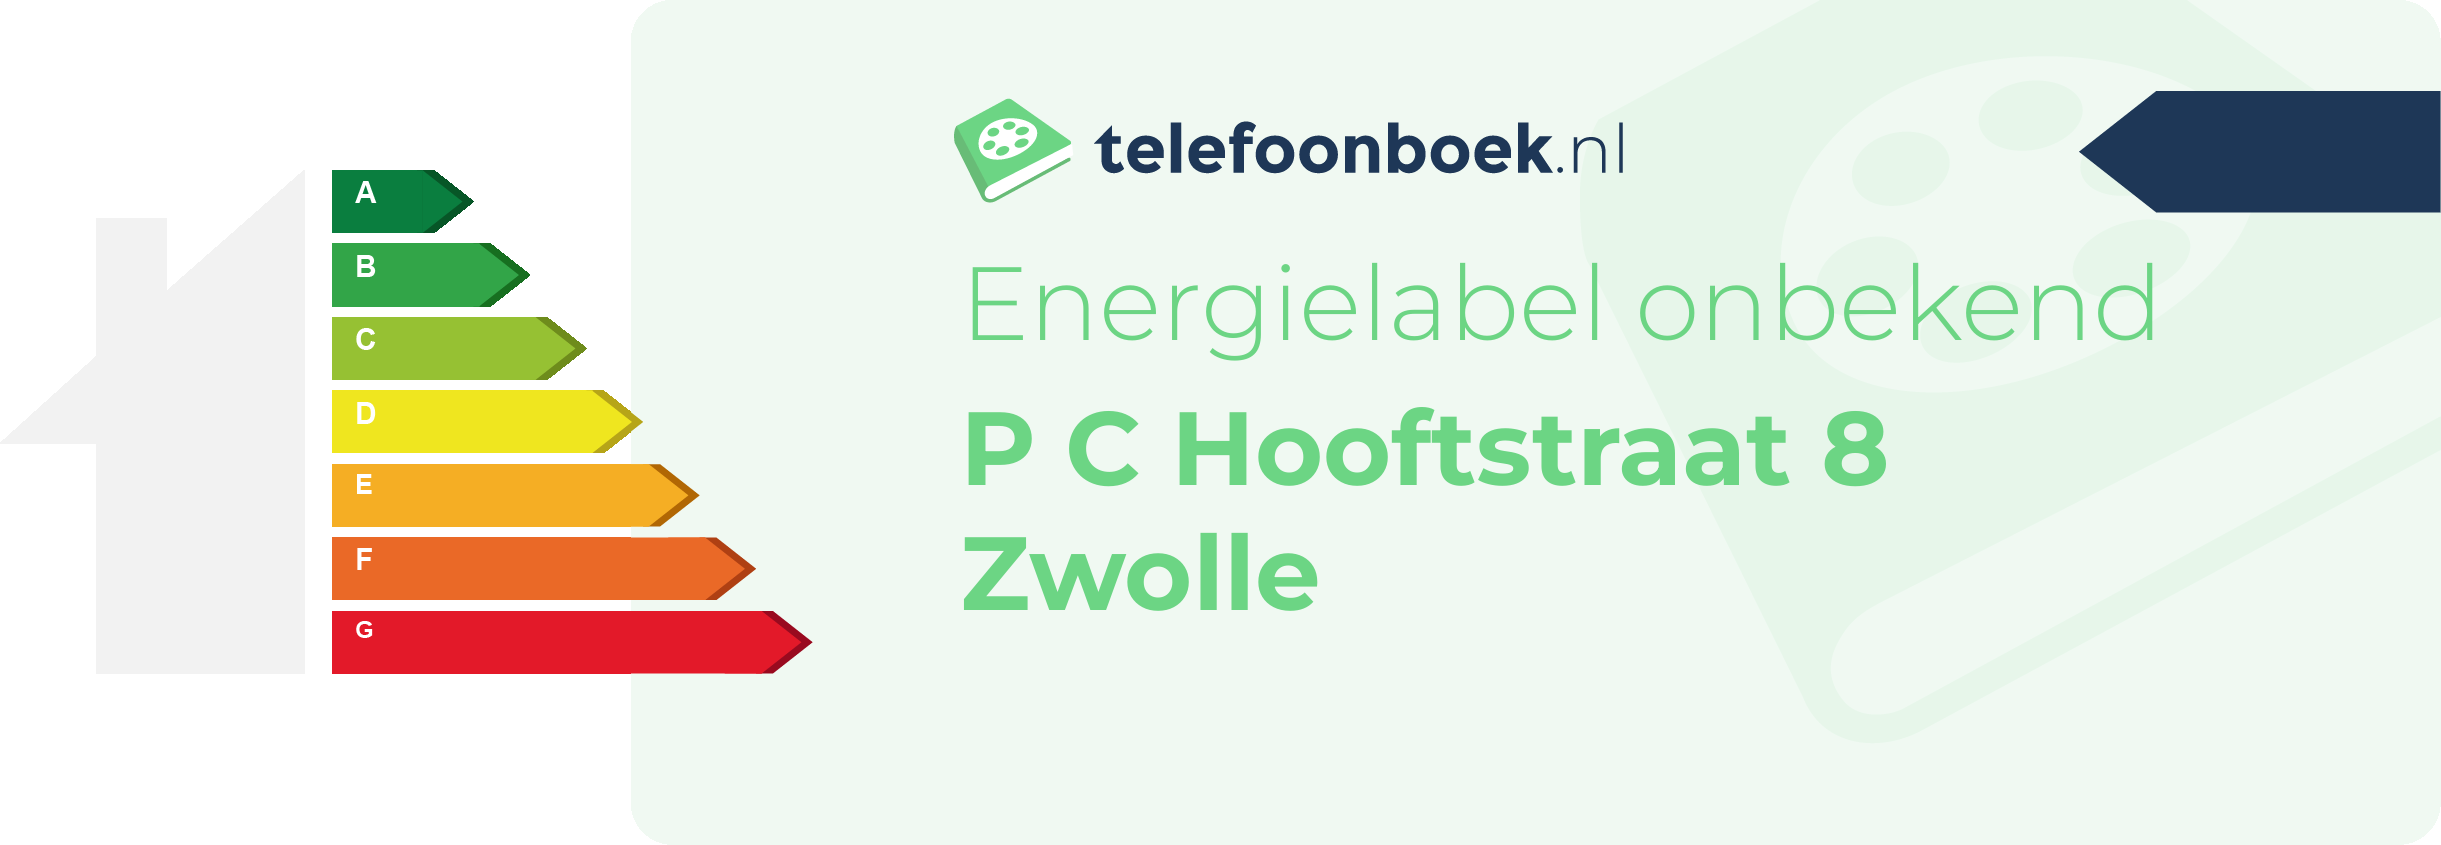 Energielabel P C Hooftstraat 8 Zwolle